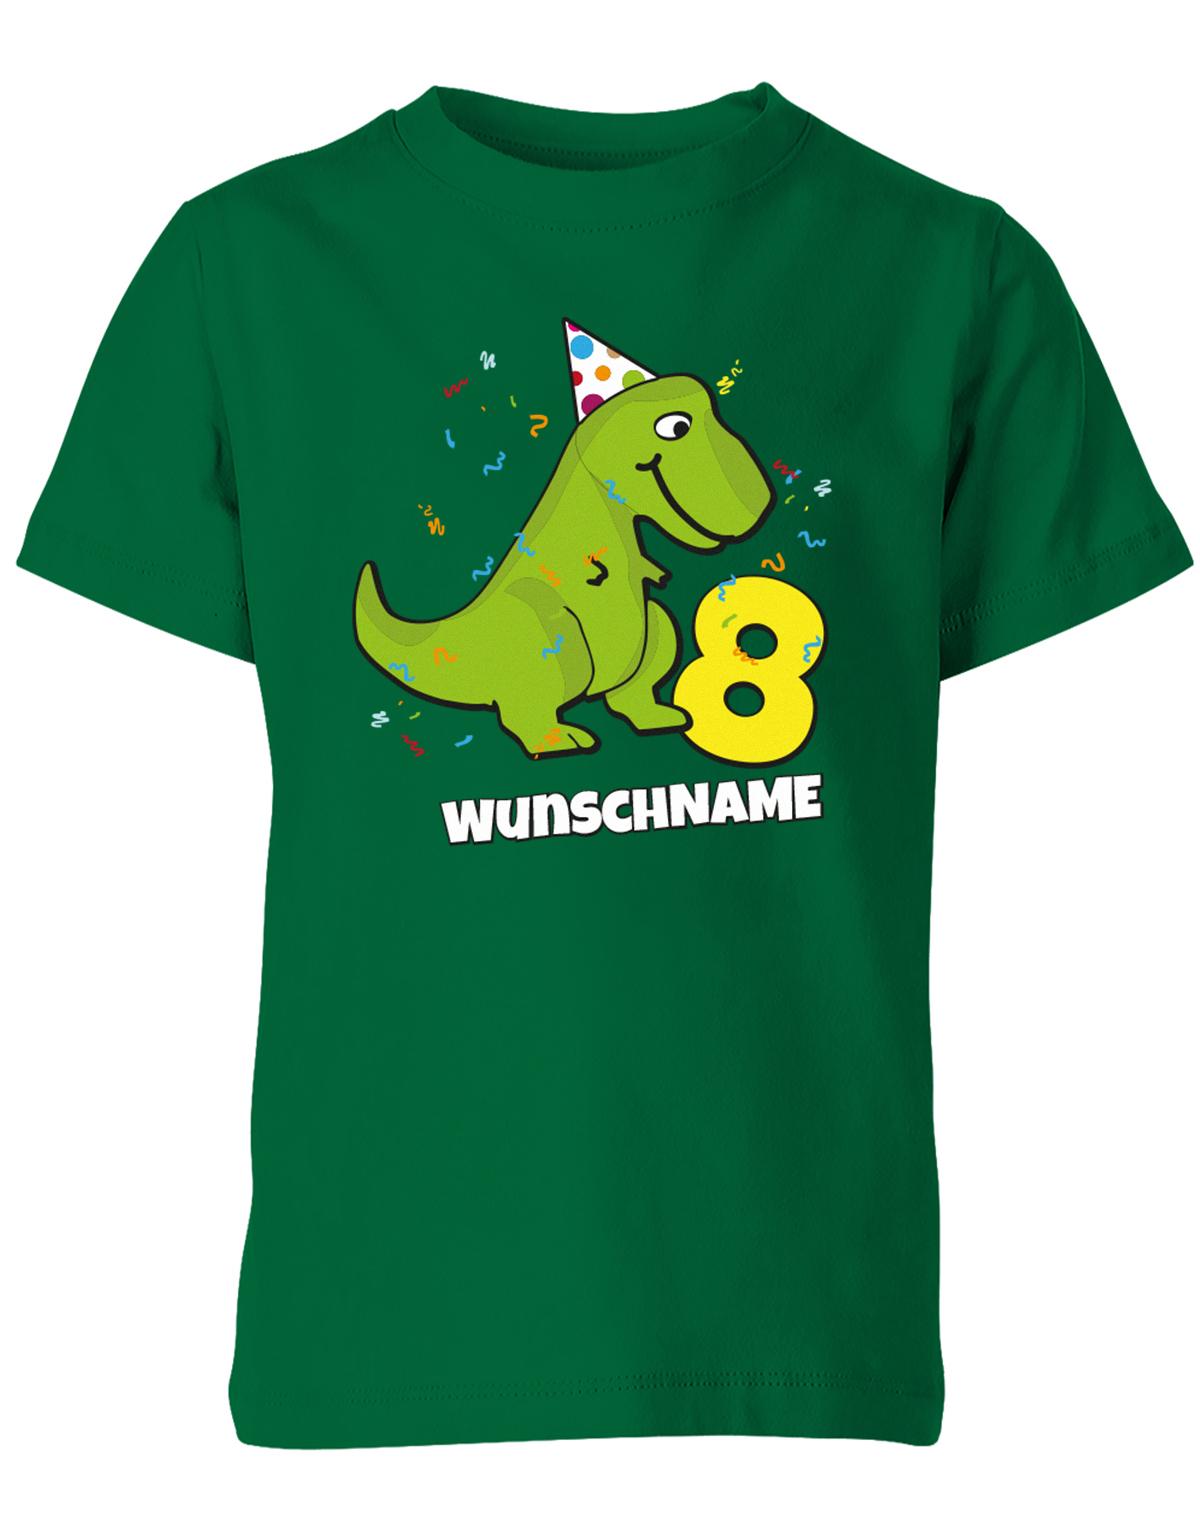 ich-bin-8-Dinosaurier-t-rex-wunschname-geburtstag-kinder-shirt-gruen